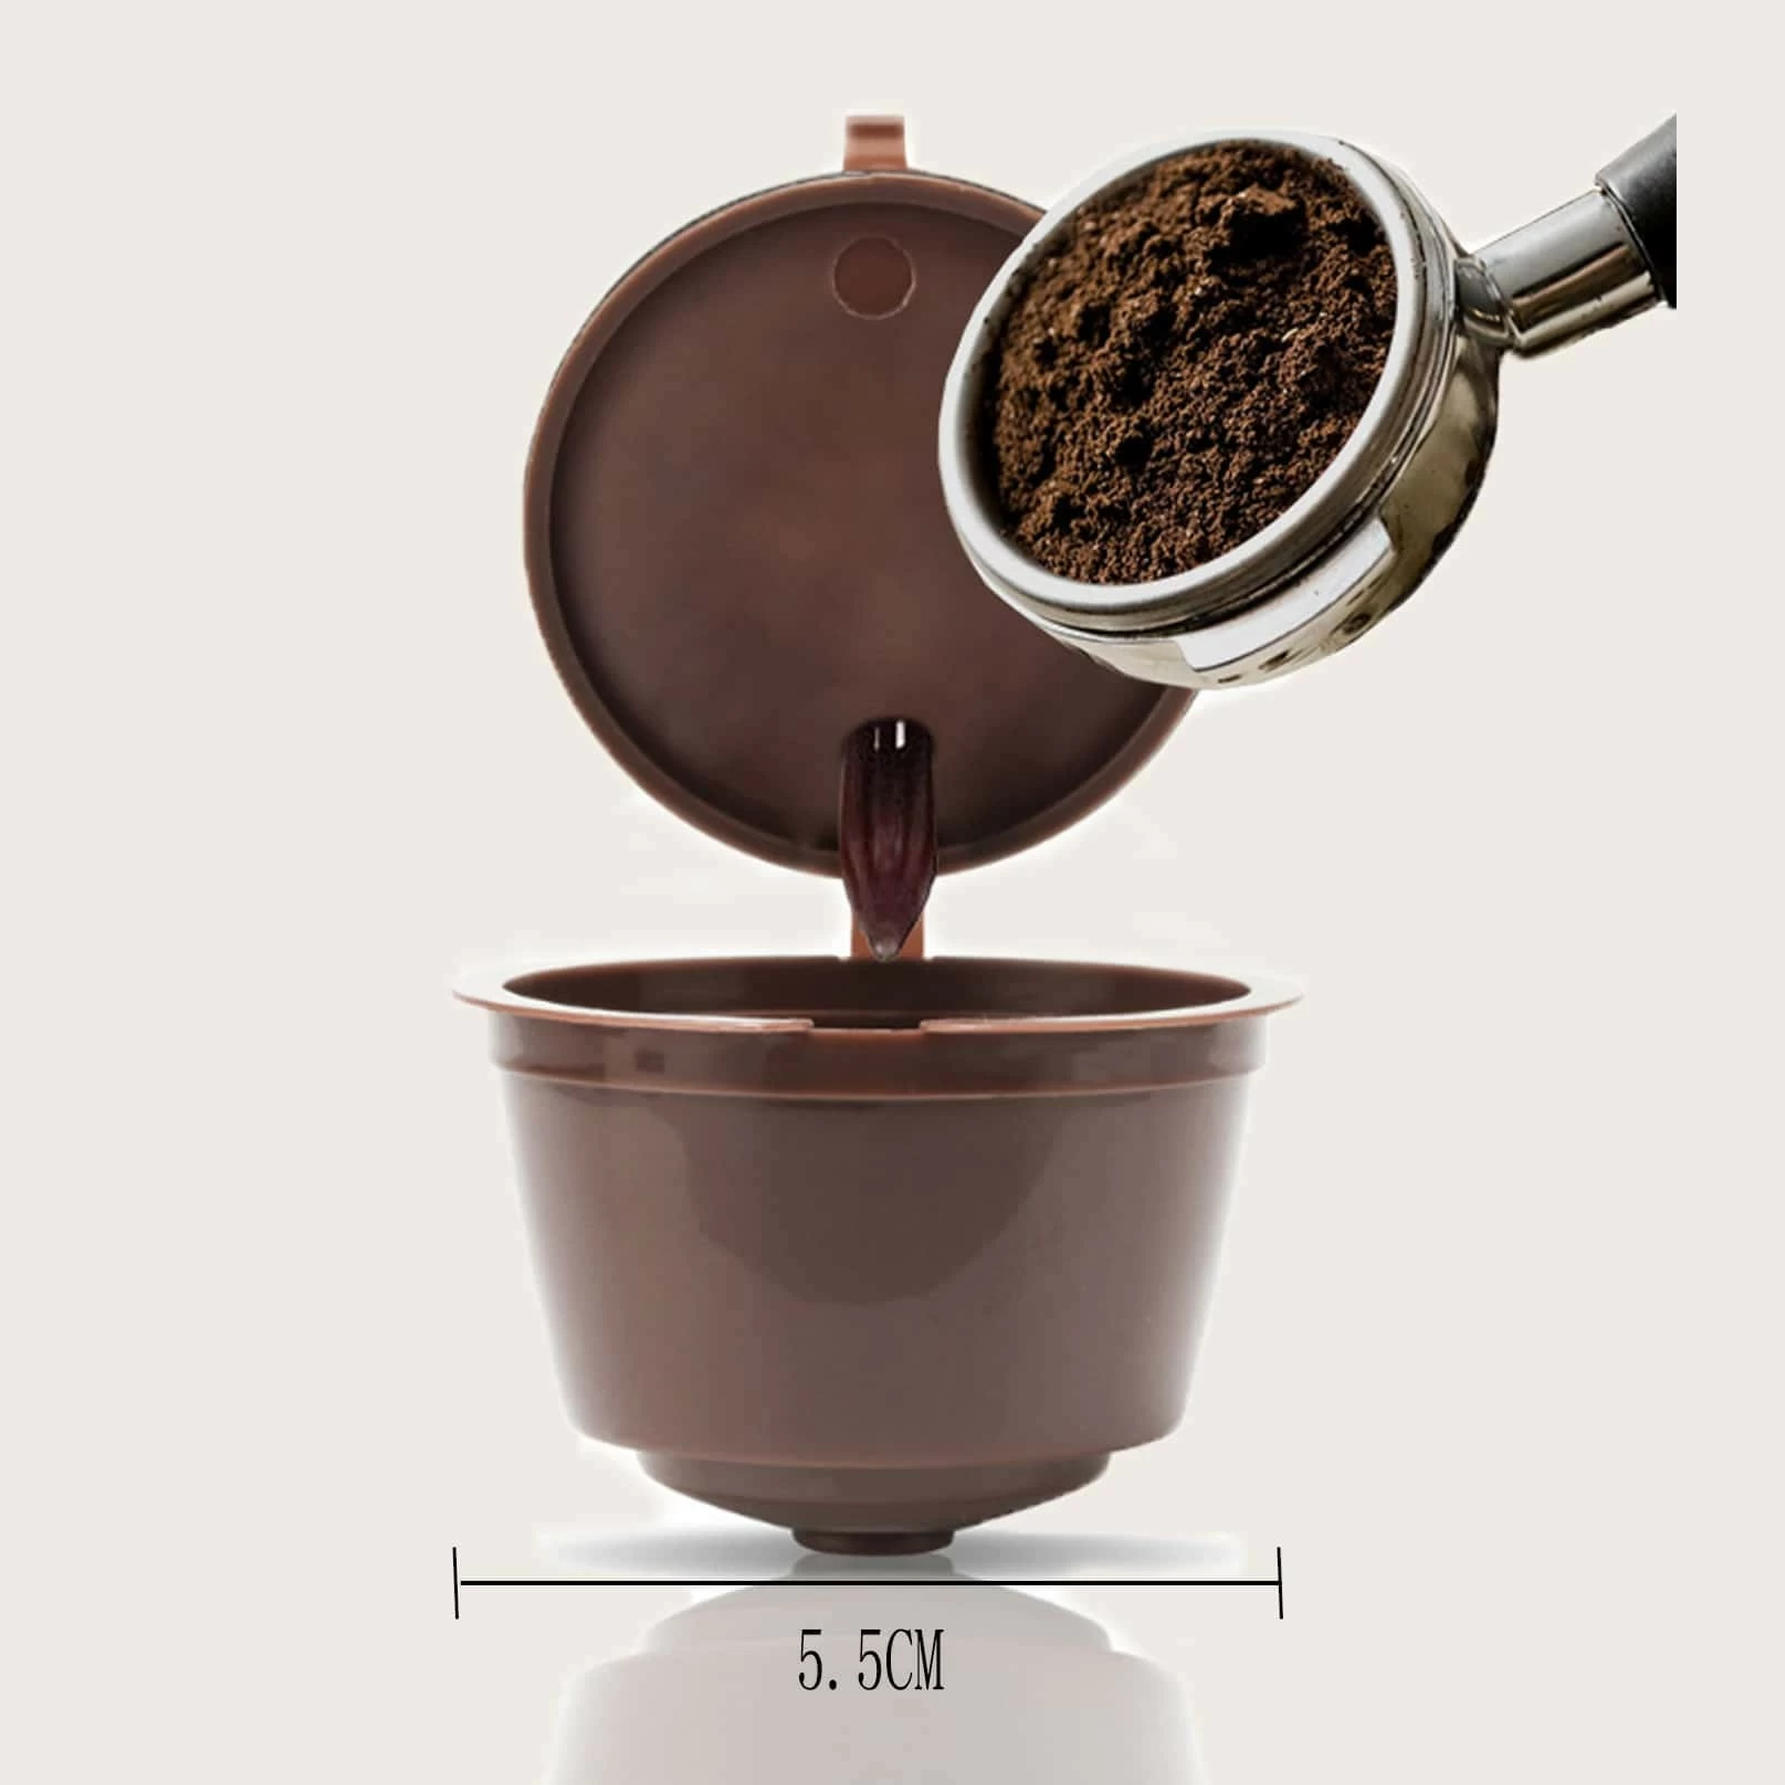 كبسولات فلاتر القهوة البلاستيكية القابلة لاعادة الاستخدام مع دولتشي جوستو، للاستخدام 200 مرة